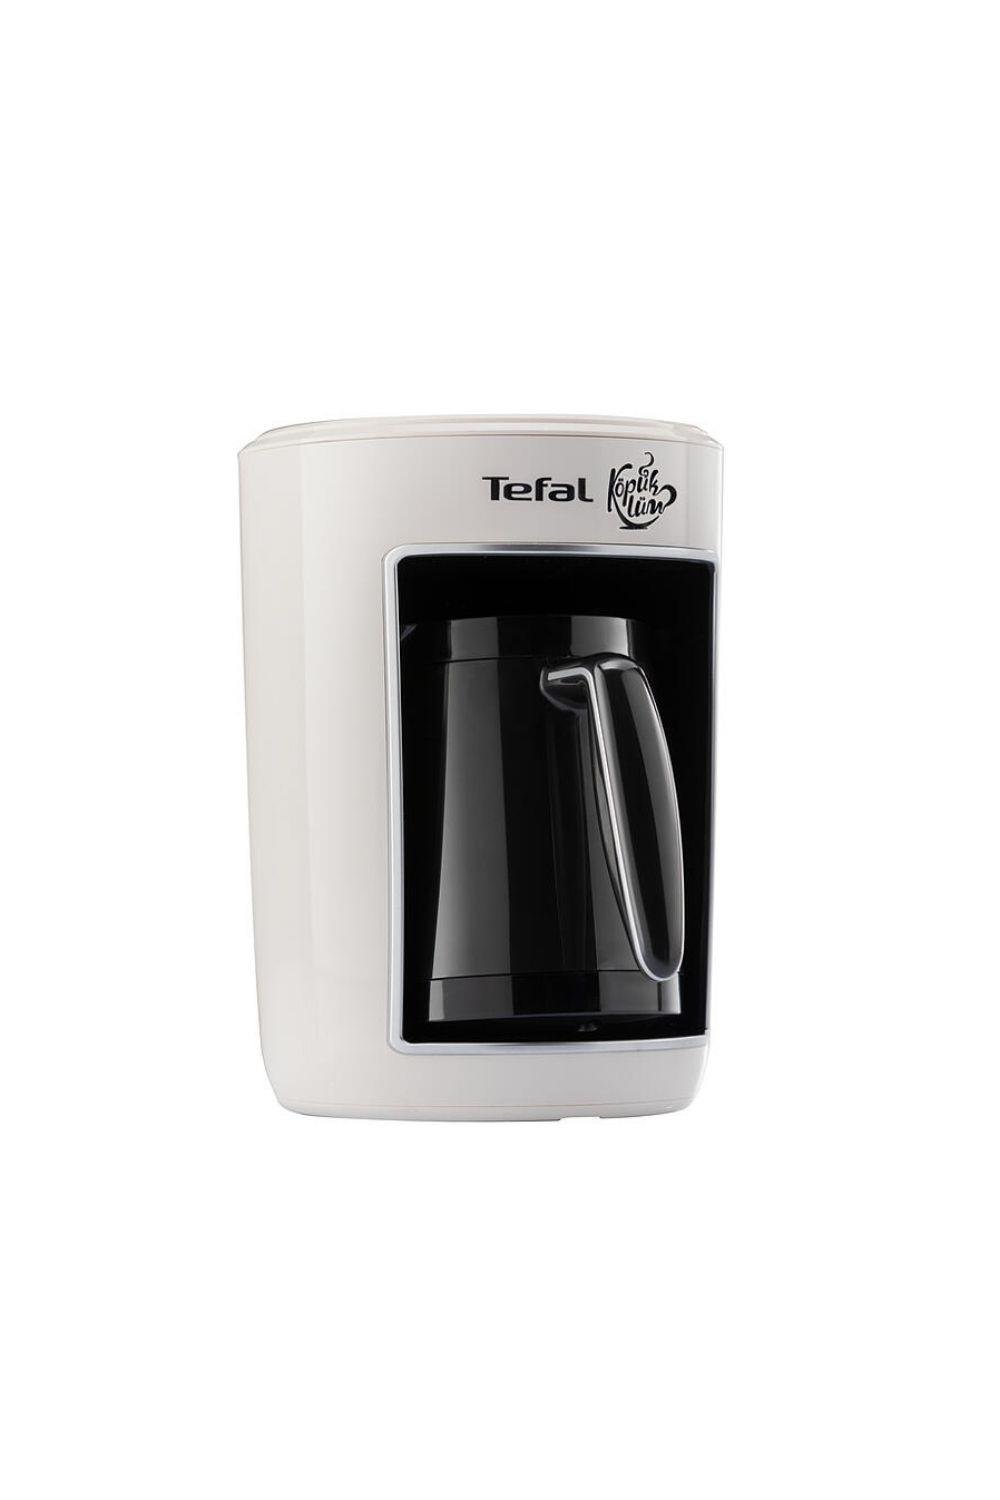 Tefal CM8201 Köpüklüm Beyaz Türk Kahve Makinesi (Teşhir & Outlet) -  9100034358 - Teşhir & Outlet Fırsatlarıyla | En Uygun Fiyatlar ve Hızlı  Kargo!